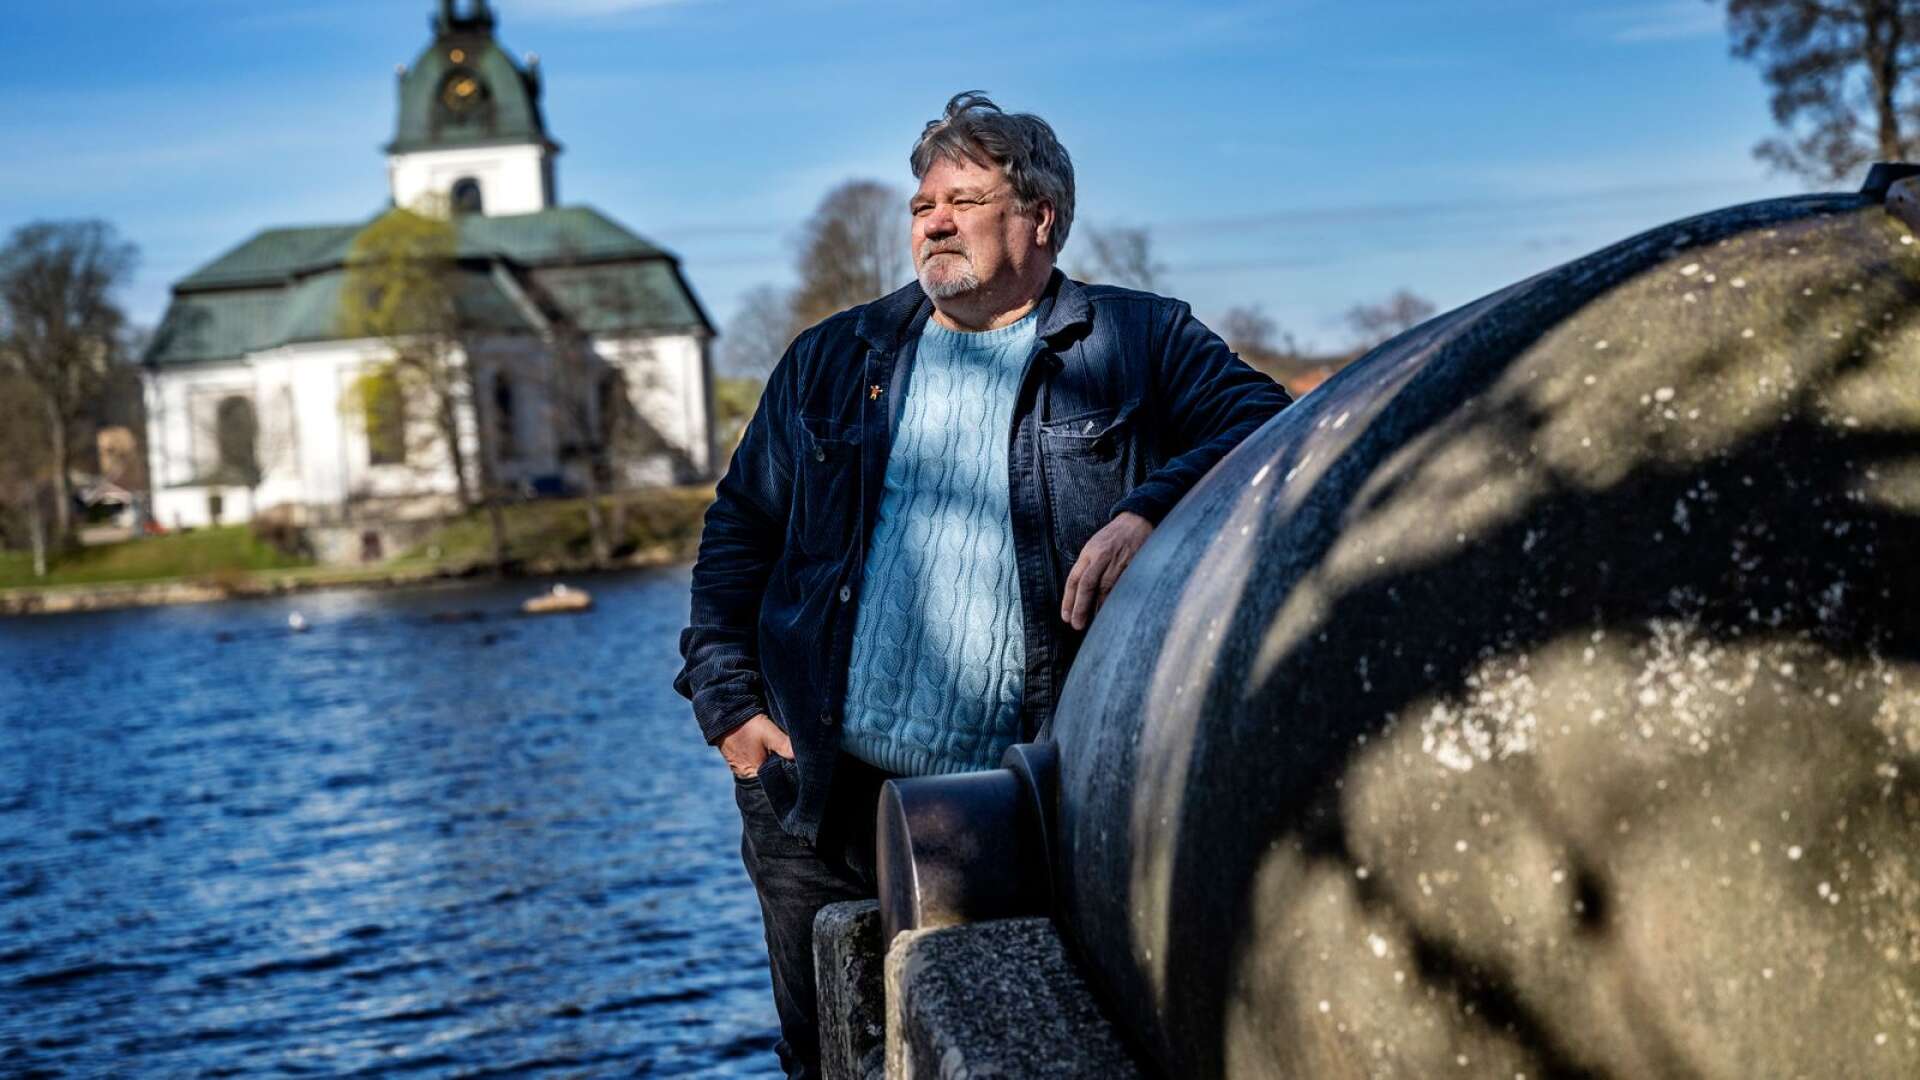 Anders Nilsson ställer sig kritisk till hur den politiska majoritet har hanterat frågan om Folkets hus i Filipstad, liksom kritisk till att oppositionen tycks sitta tyst.